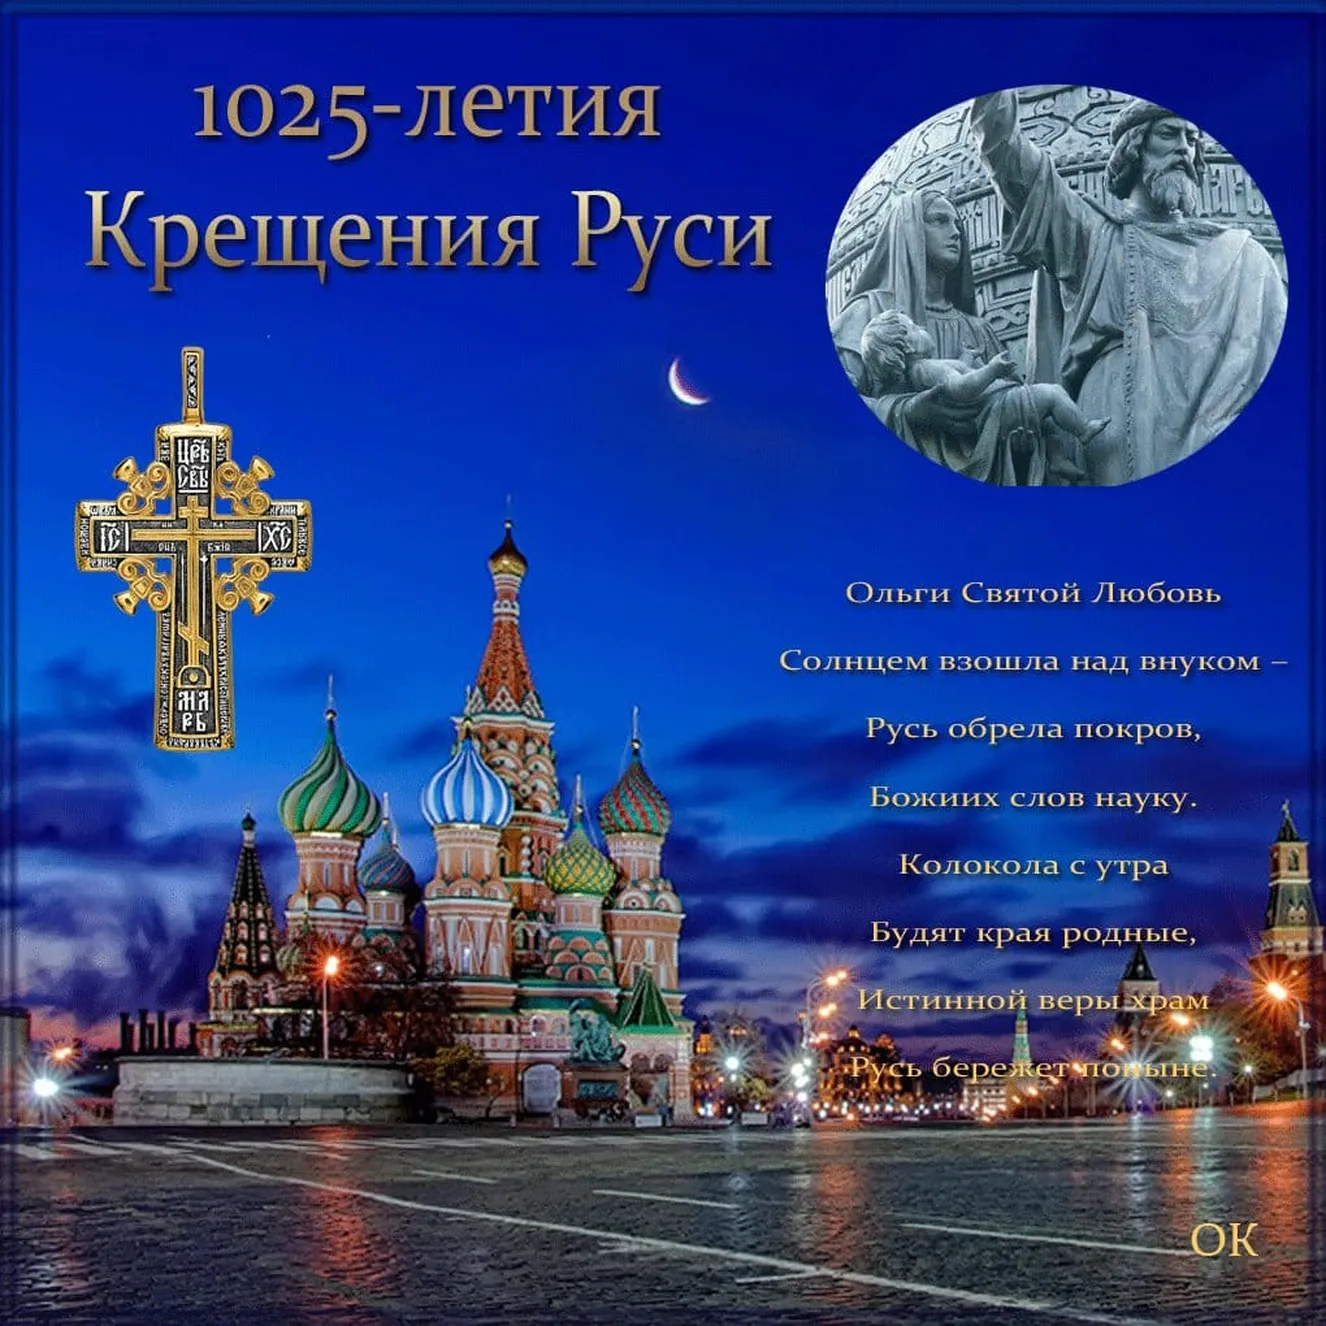 Поздравить с днем крещения Руси открыткой